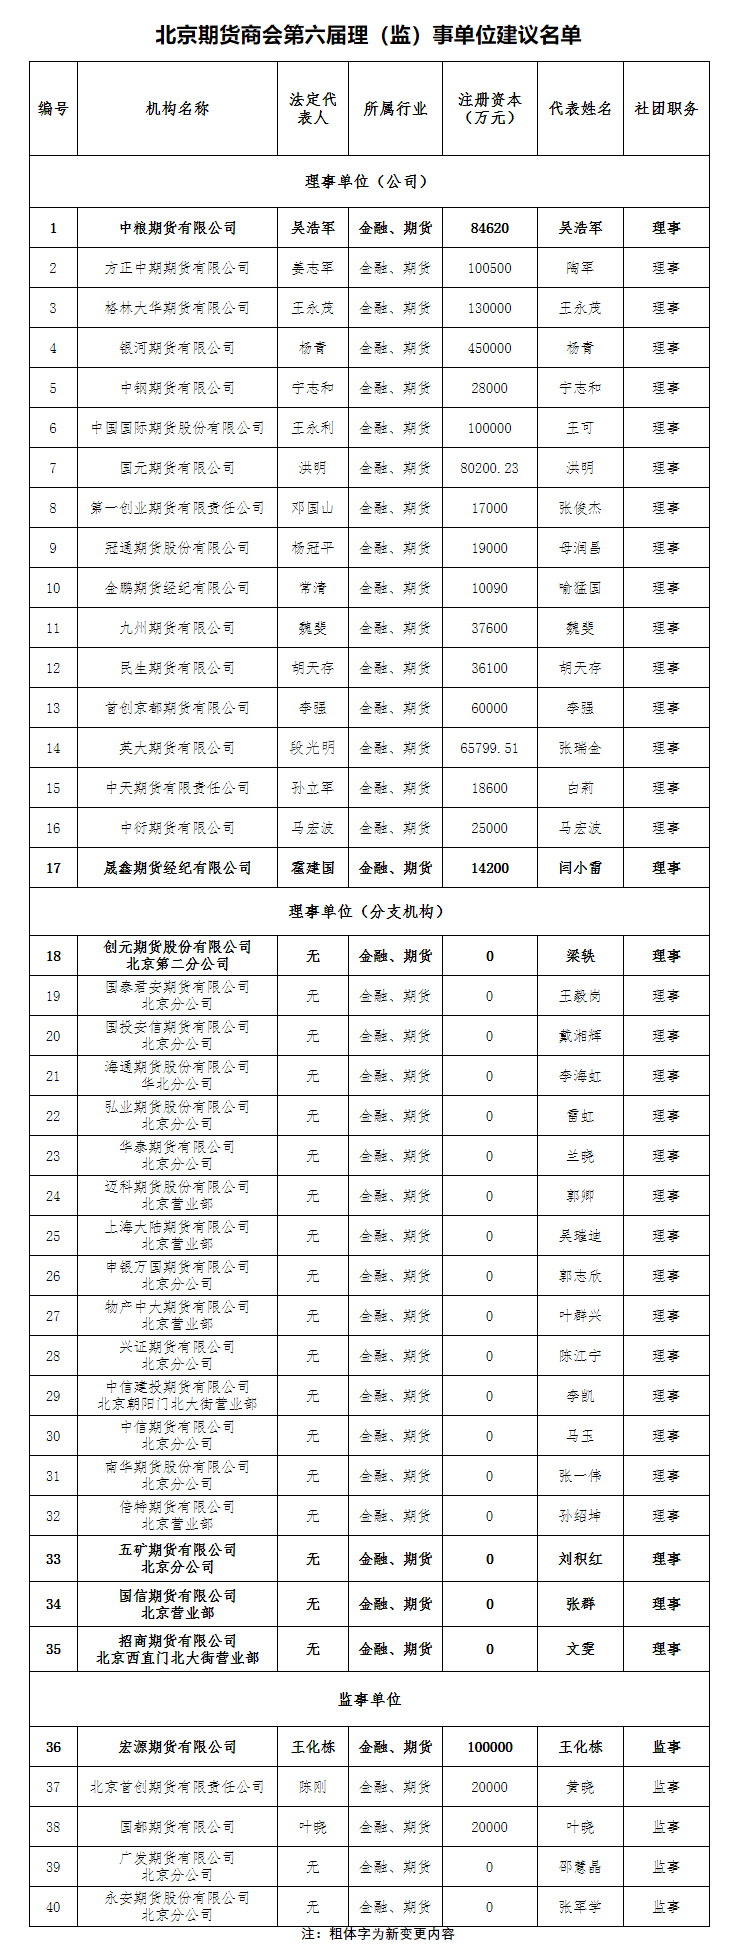 北京期货商会第六届理（监）事单位建议名单2.htm.png